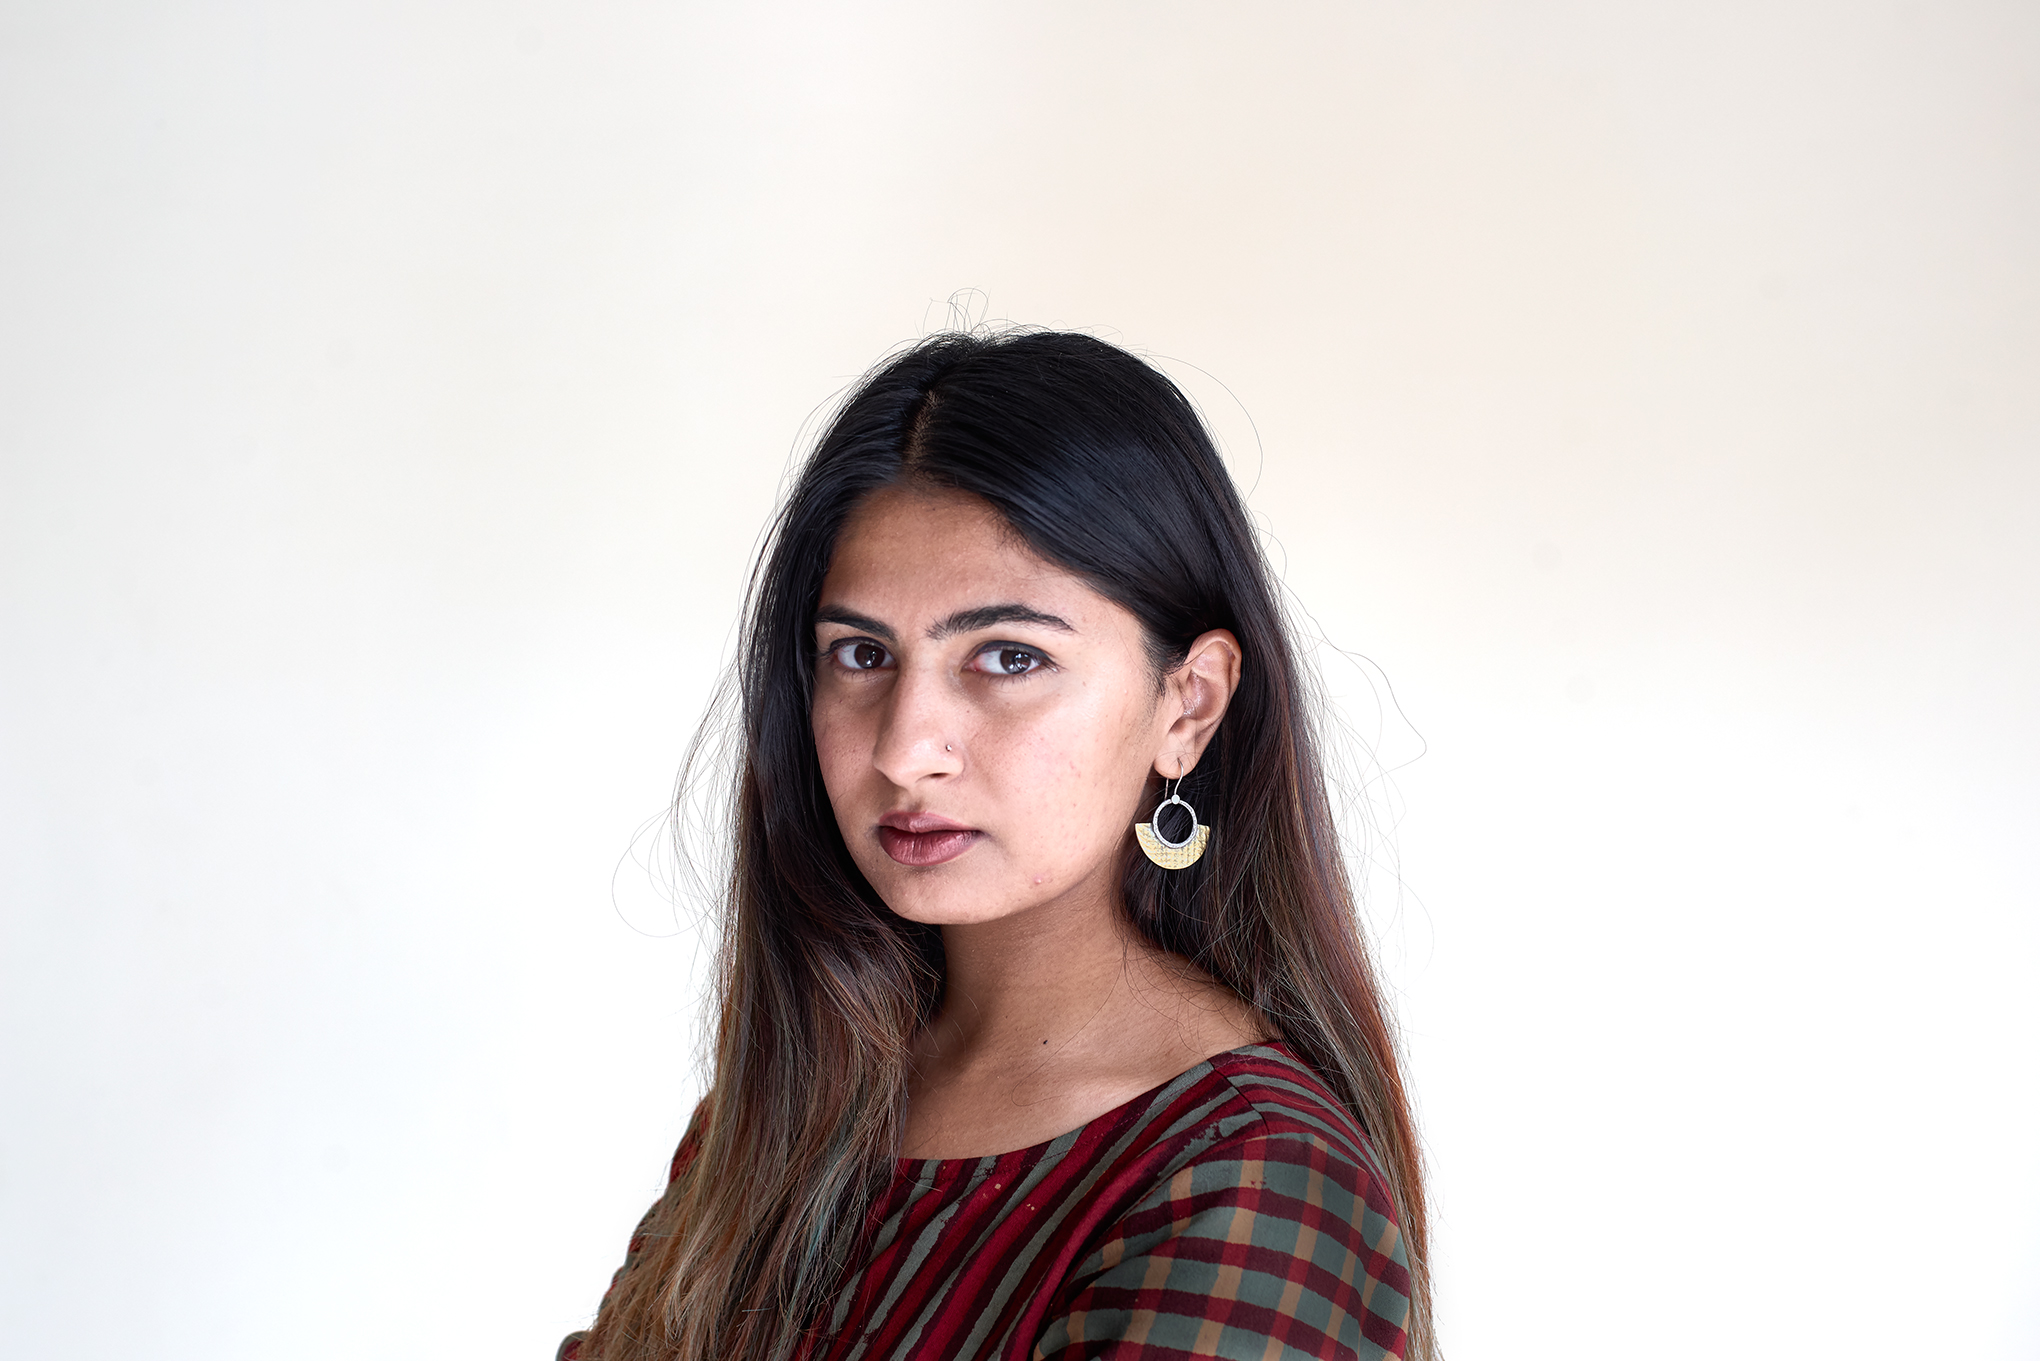 Student activist Gurmehar Kaur photographed in New Delhi, India for TIME on 21st September 2017. (CJ Clarke for TIME)